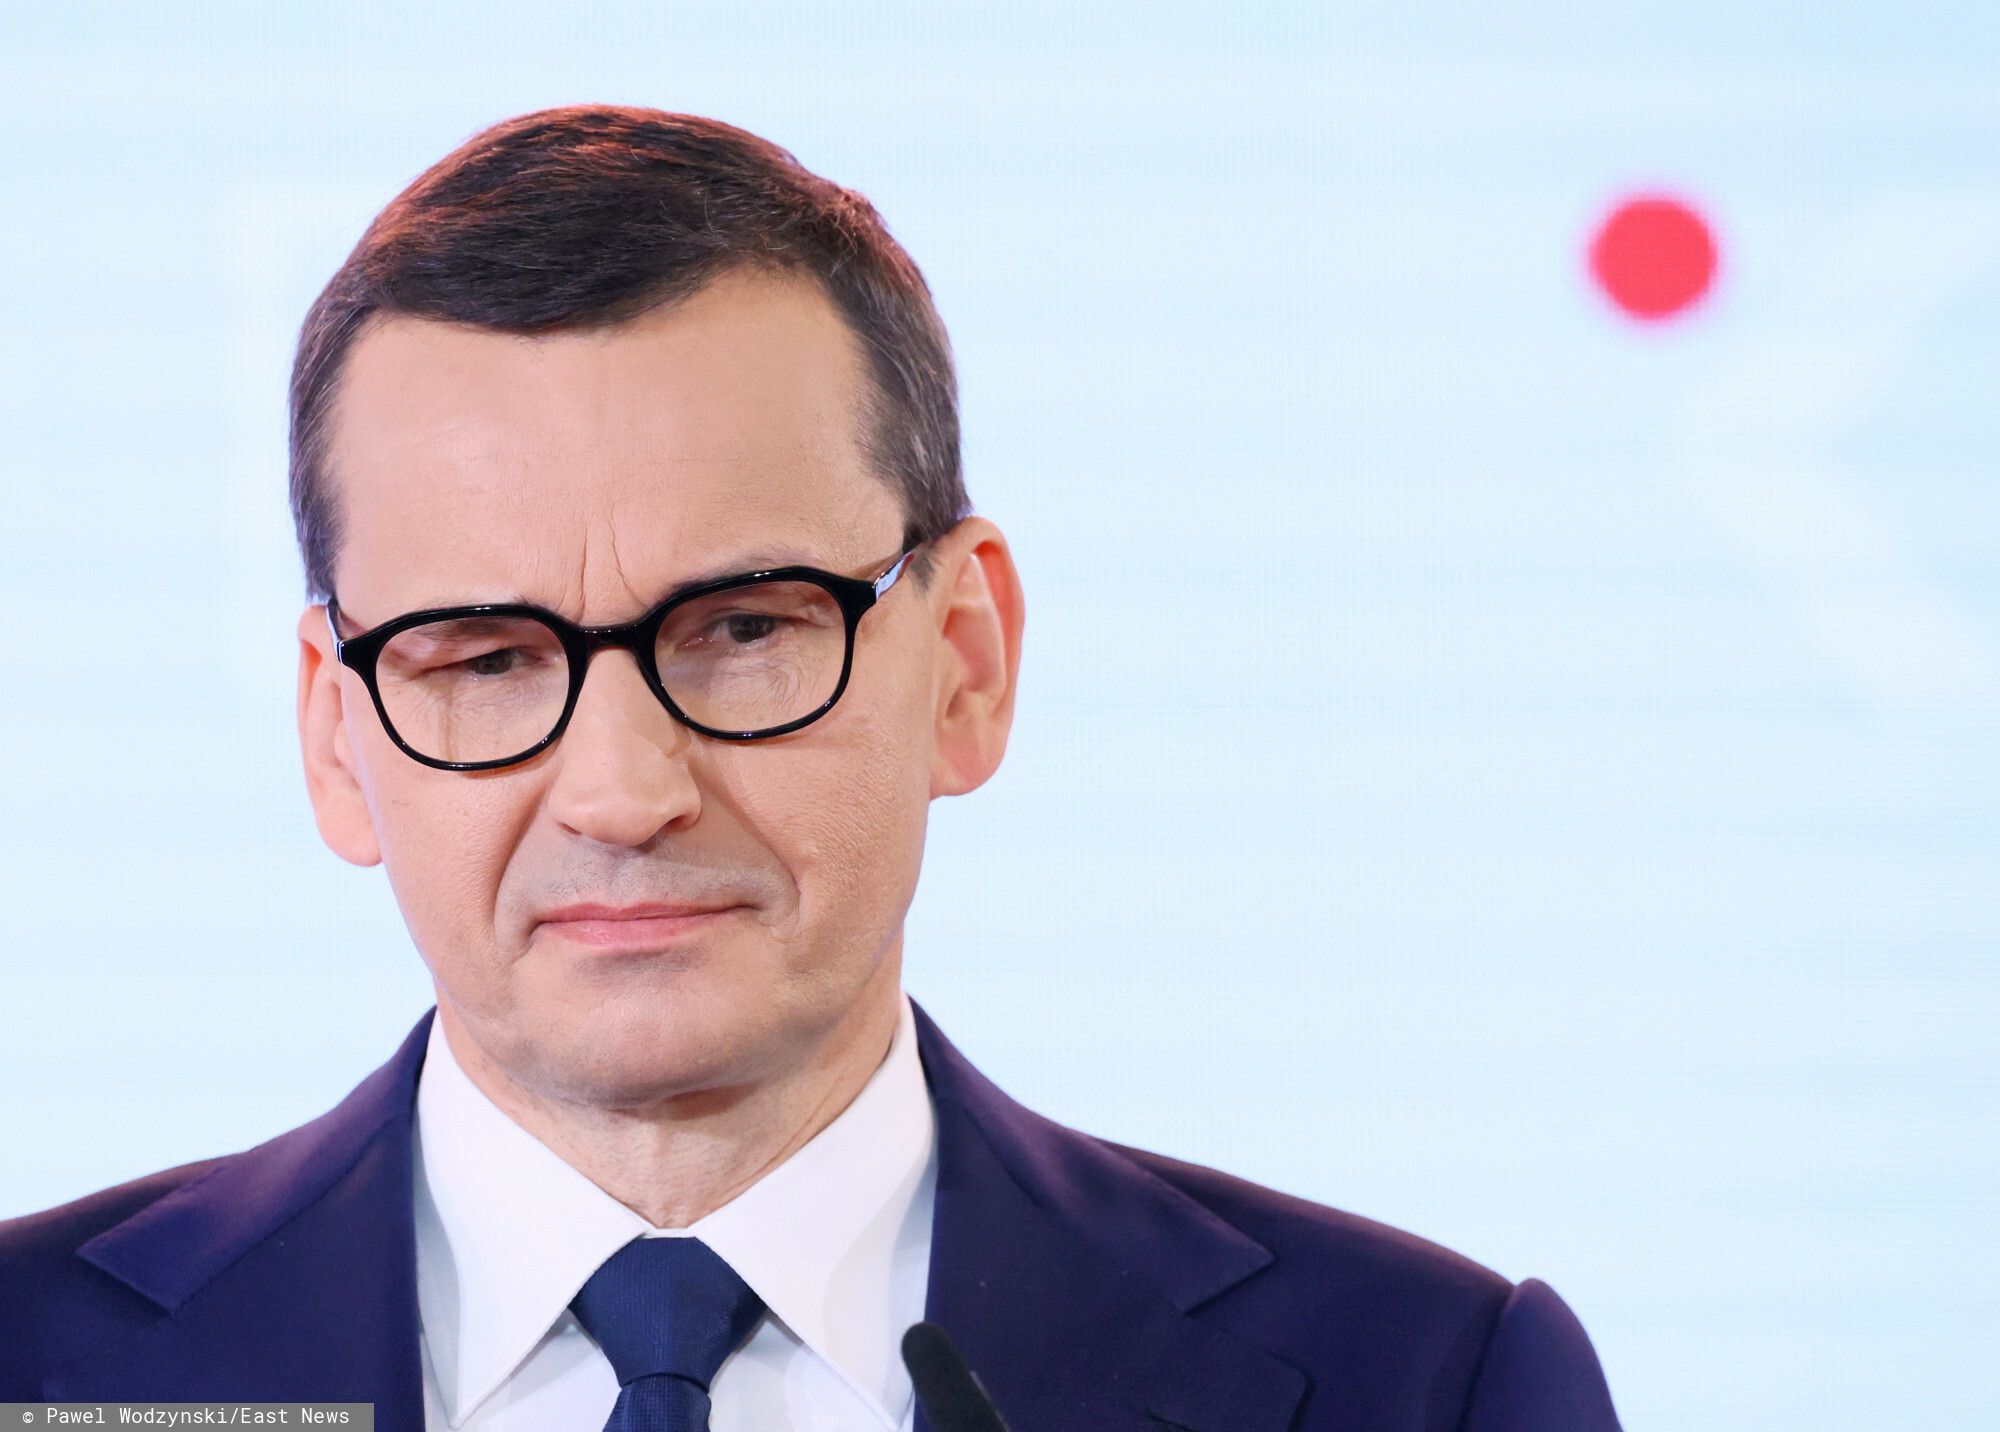 Rząd PiS jeszcze nigdy nie miał tak złej opinii u Polaków, nowy sondaż